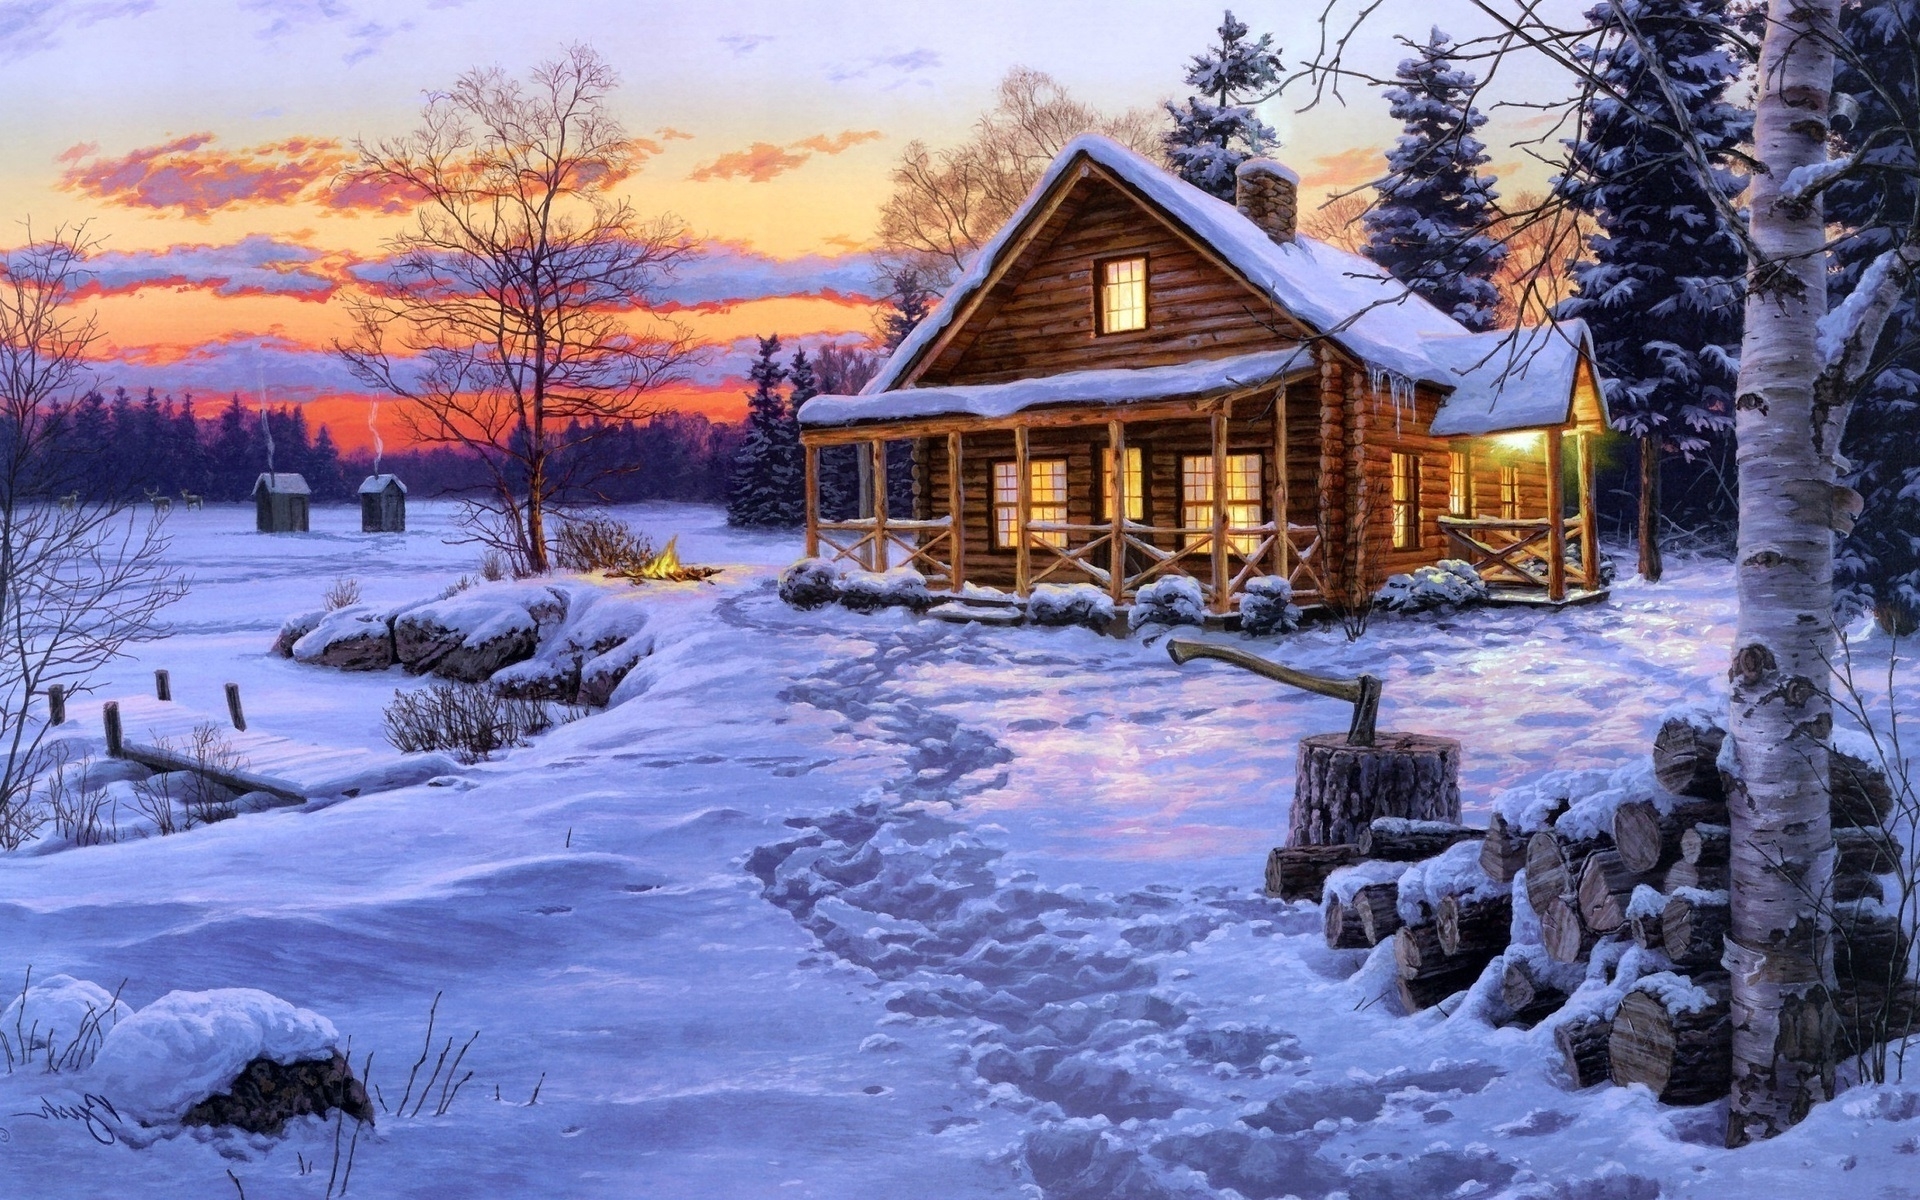 carta da parati cabina di tronchi,inverno,neve,casa,cielo,paesaggio naturale